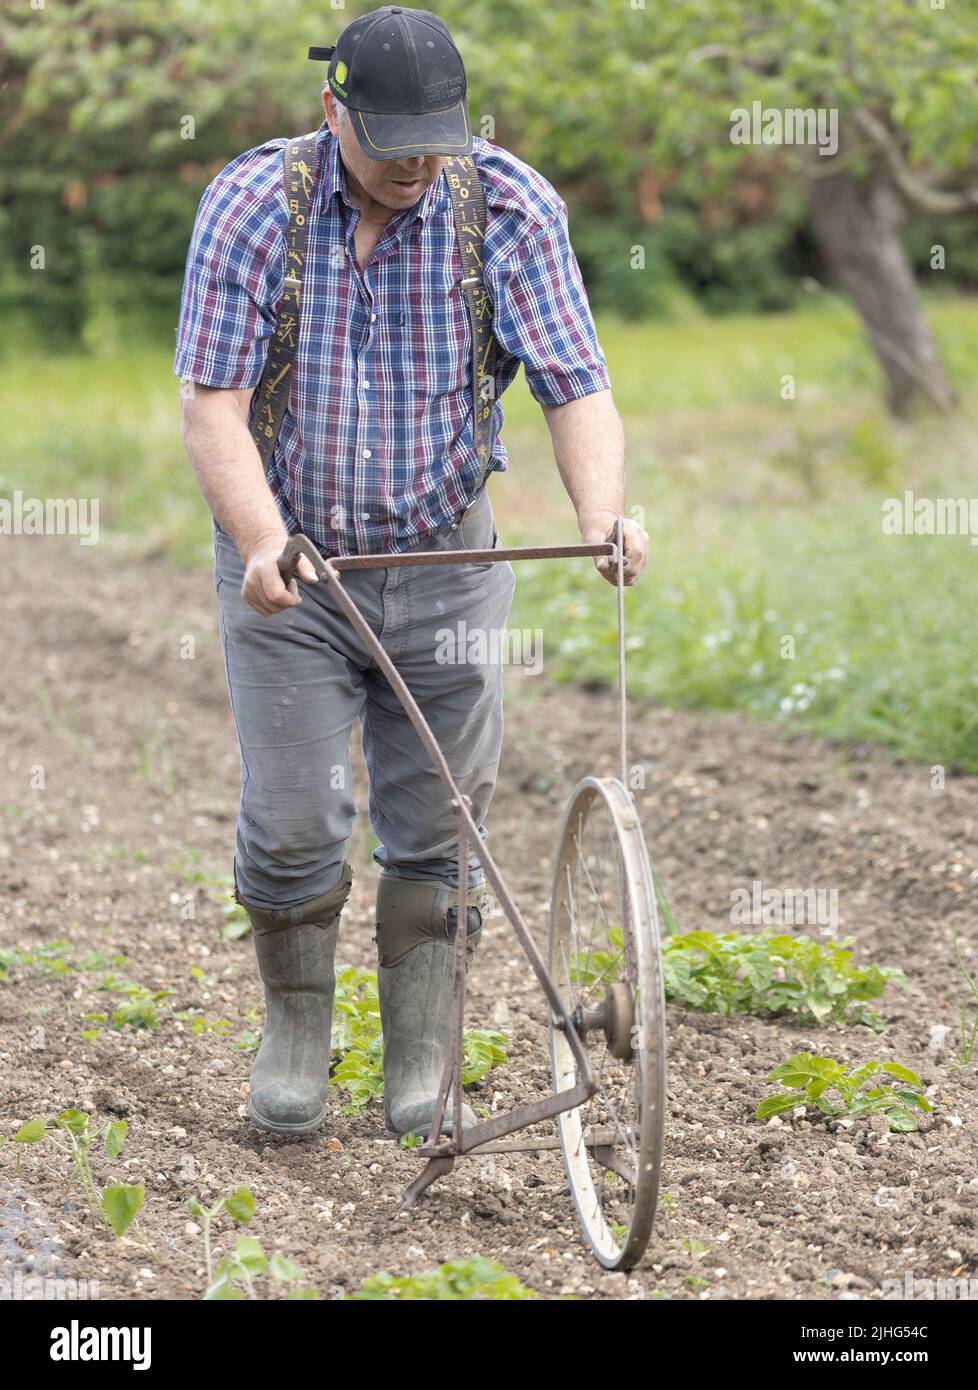 Uomo che usa una vecchia zappa gommata a mano per erpere il suolo Foto Stock